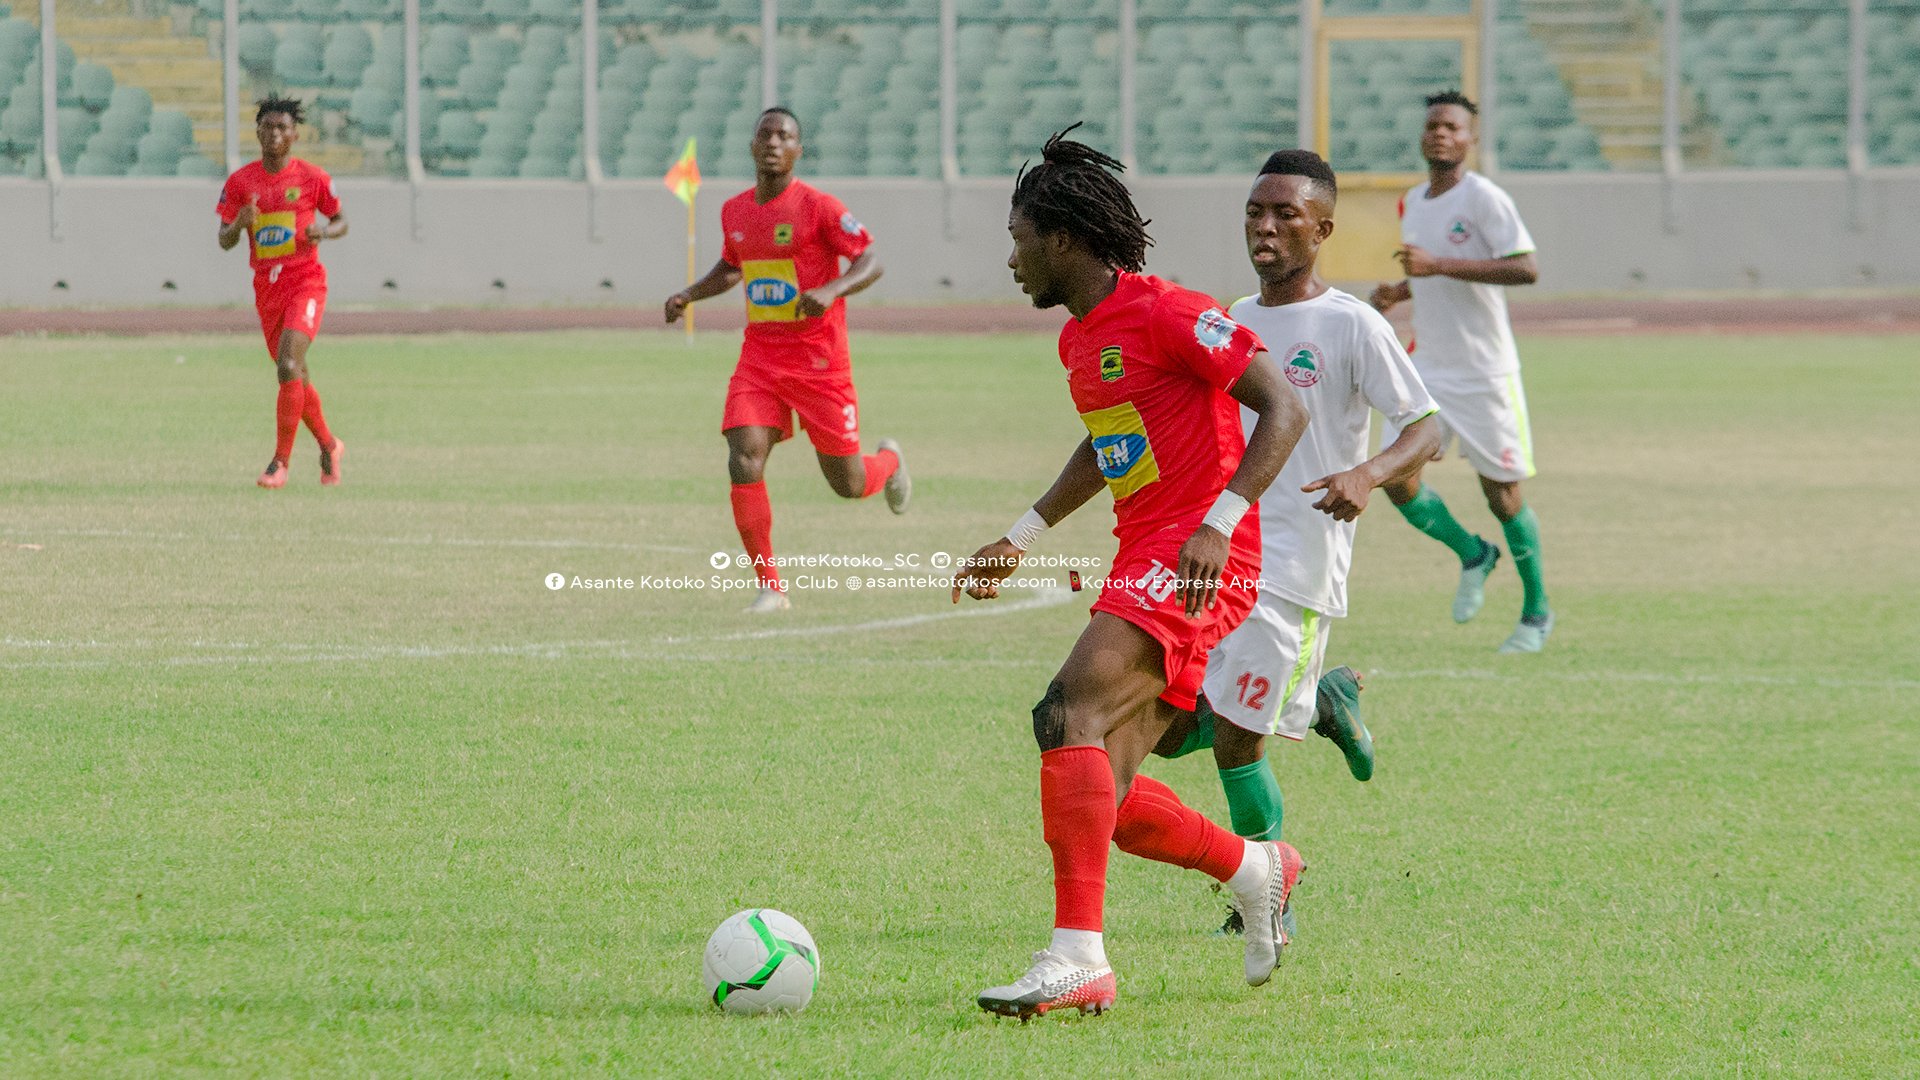 Blay’s season opener helps Asante Kotoko in lone goal victory over Wonders